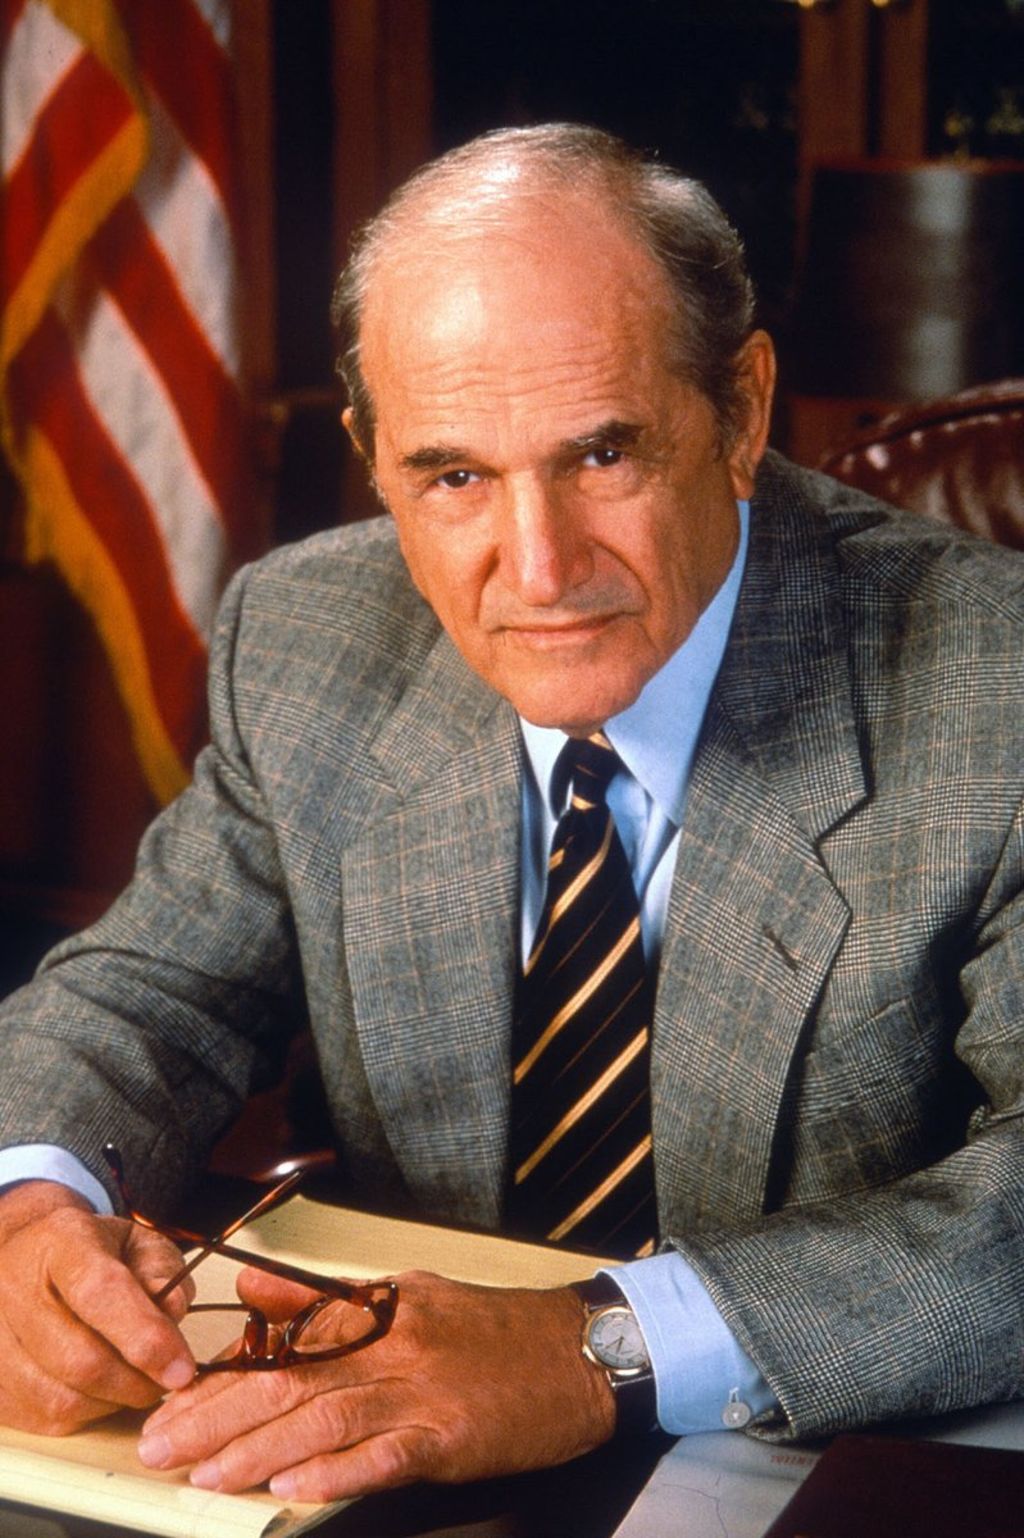  Hill interpretó a Schiff durante 10 temporadas de La Ley y el Orden (entre 1990 y 2000). (TWITTER)

